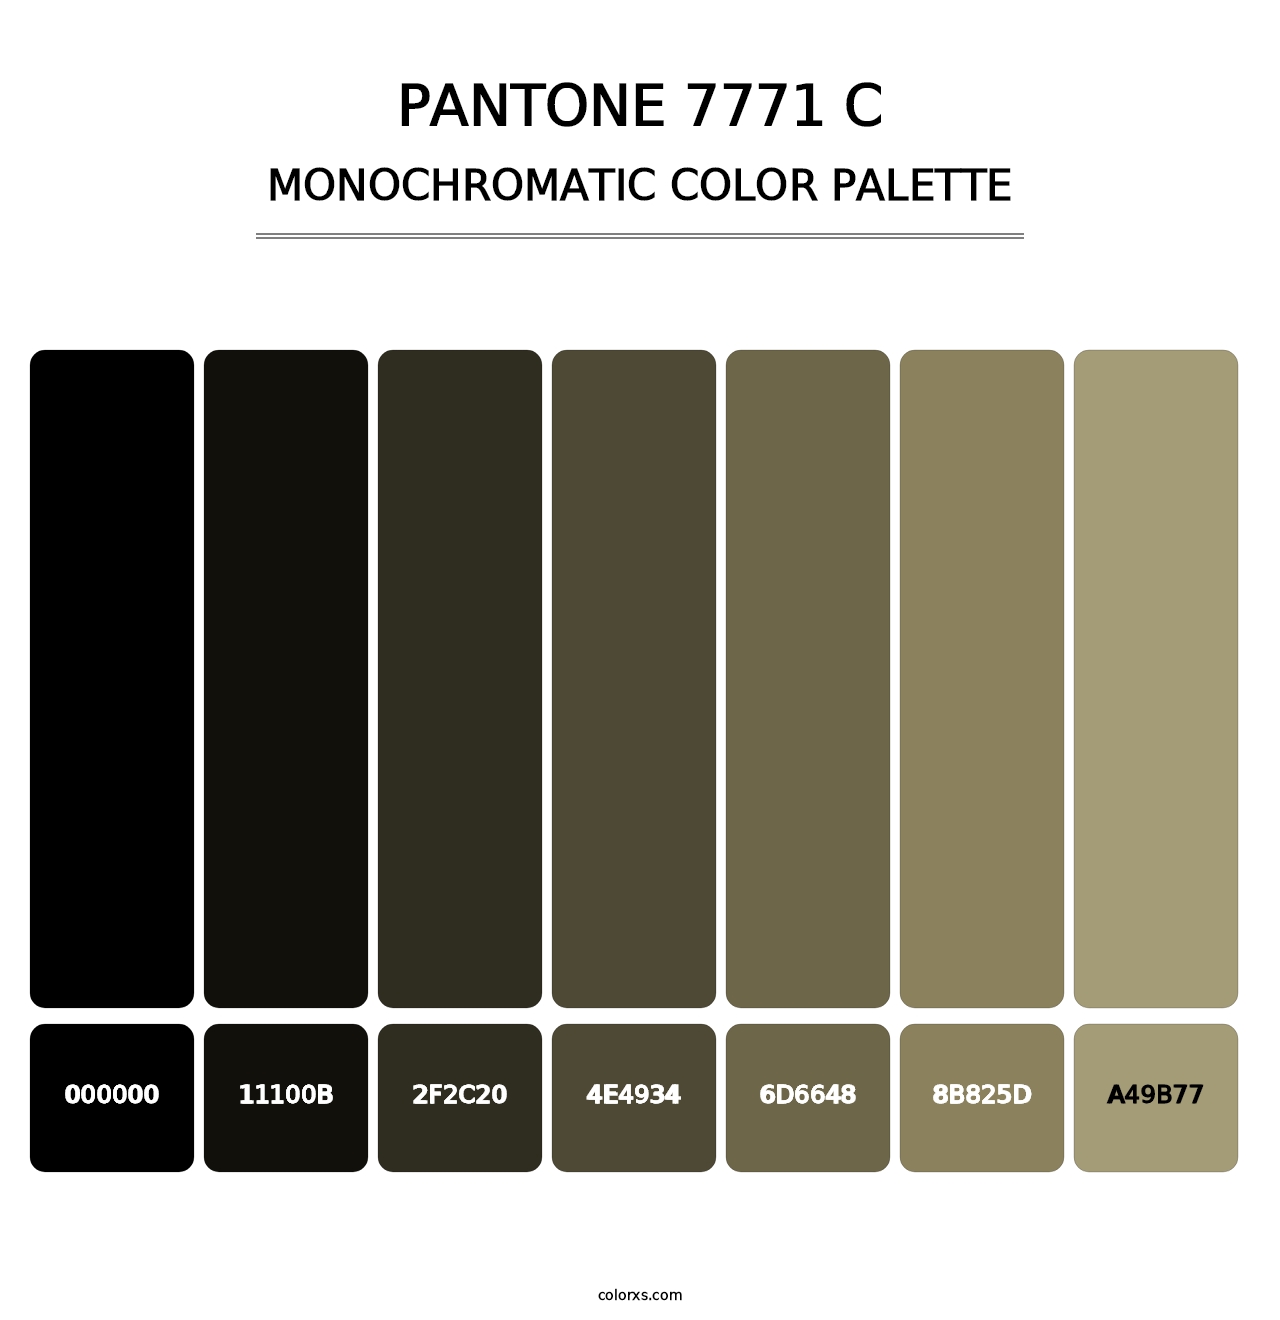 PANTONE 7771 C - Monochromatic Color Palette